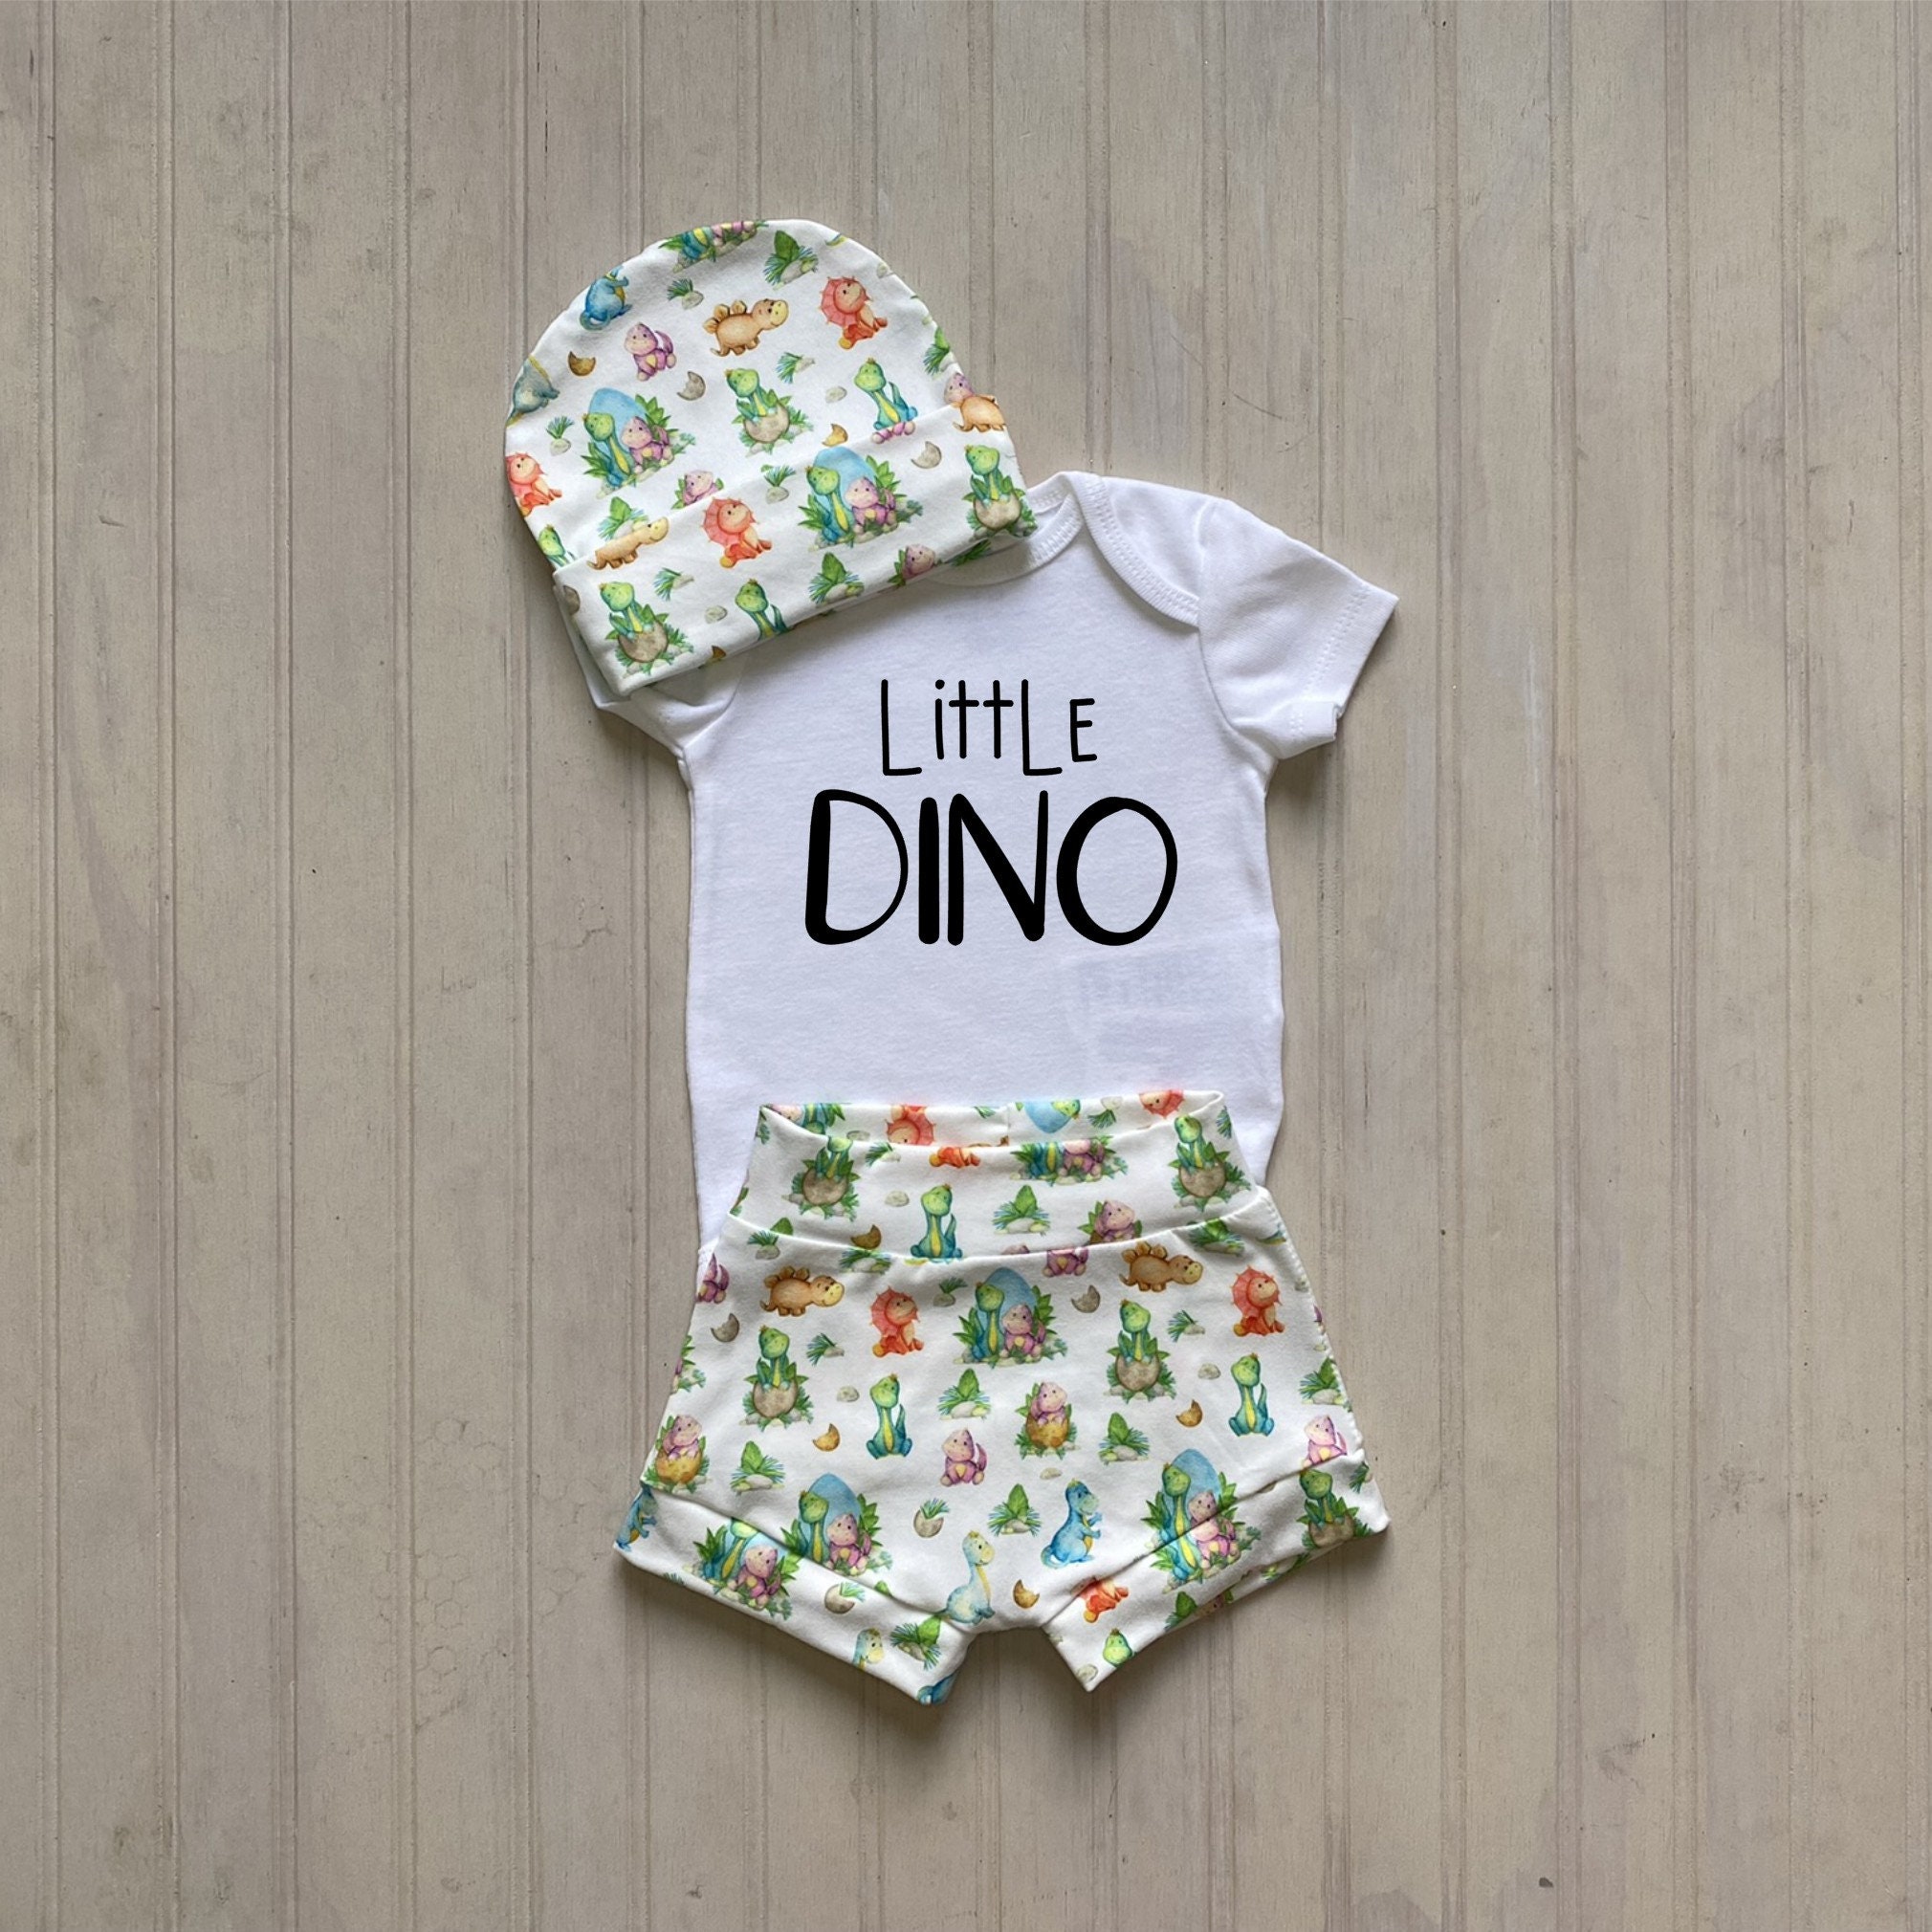 nano preemie baby clothes｜TikTok Search